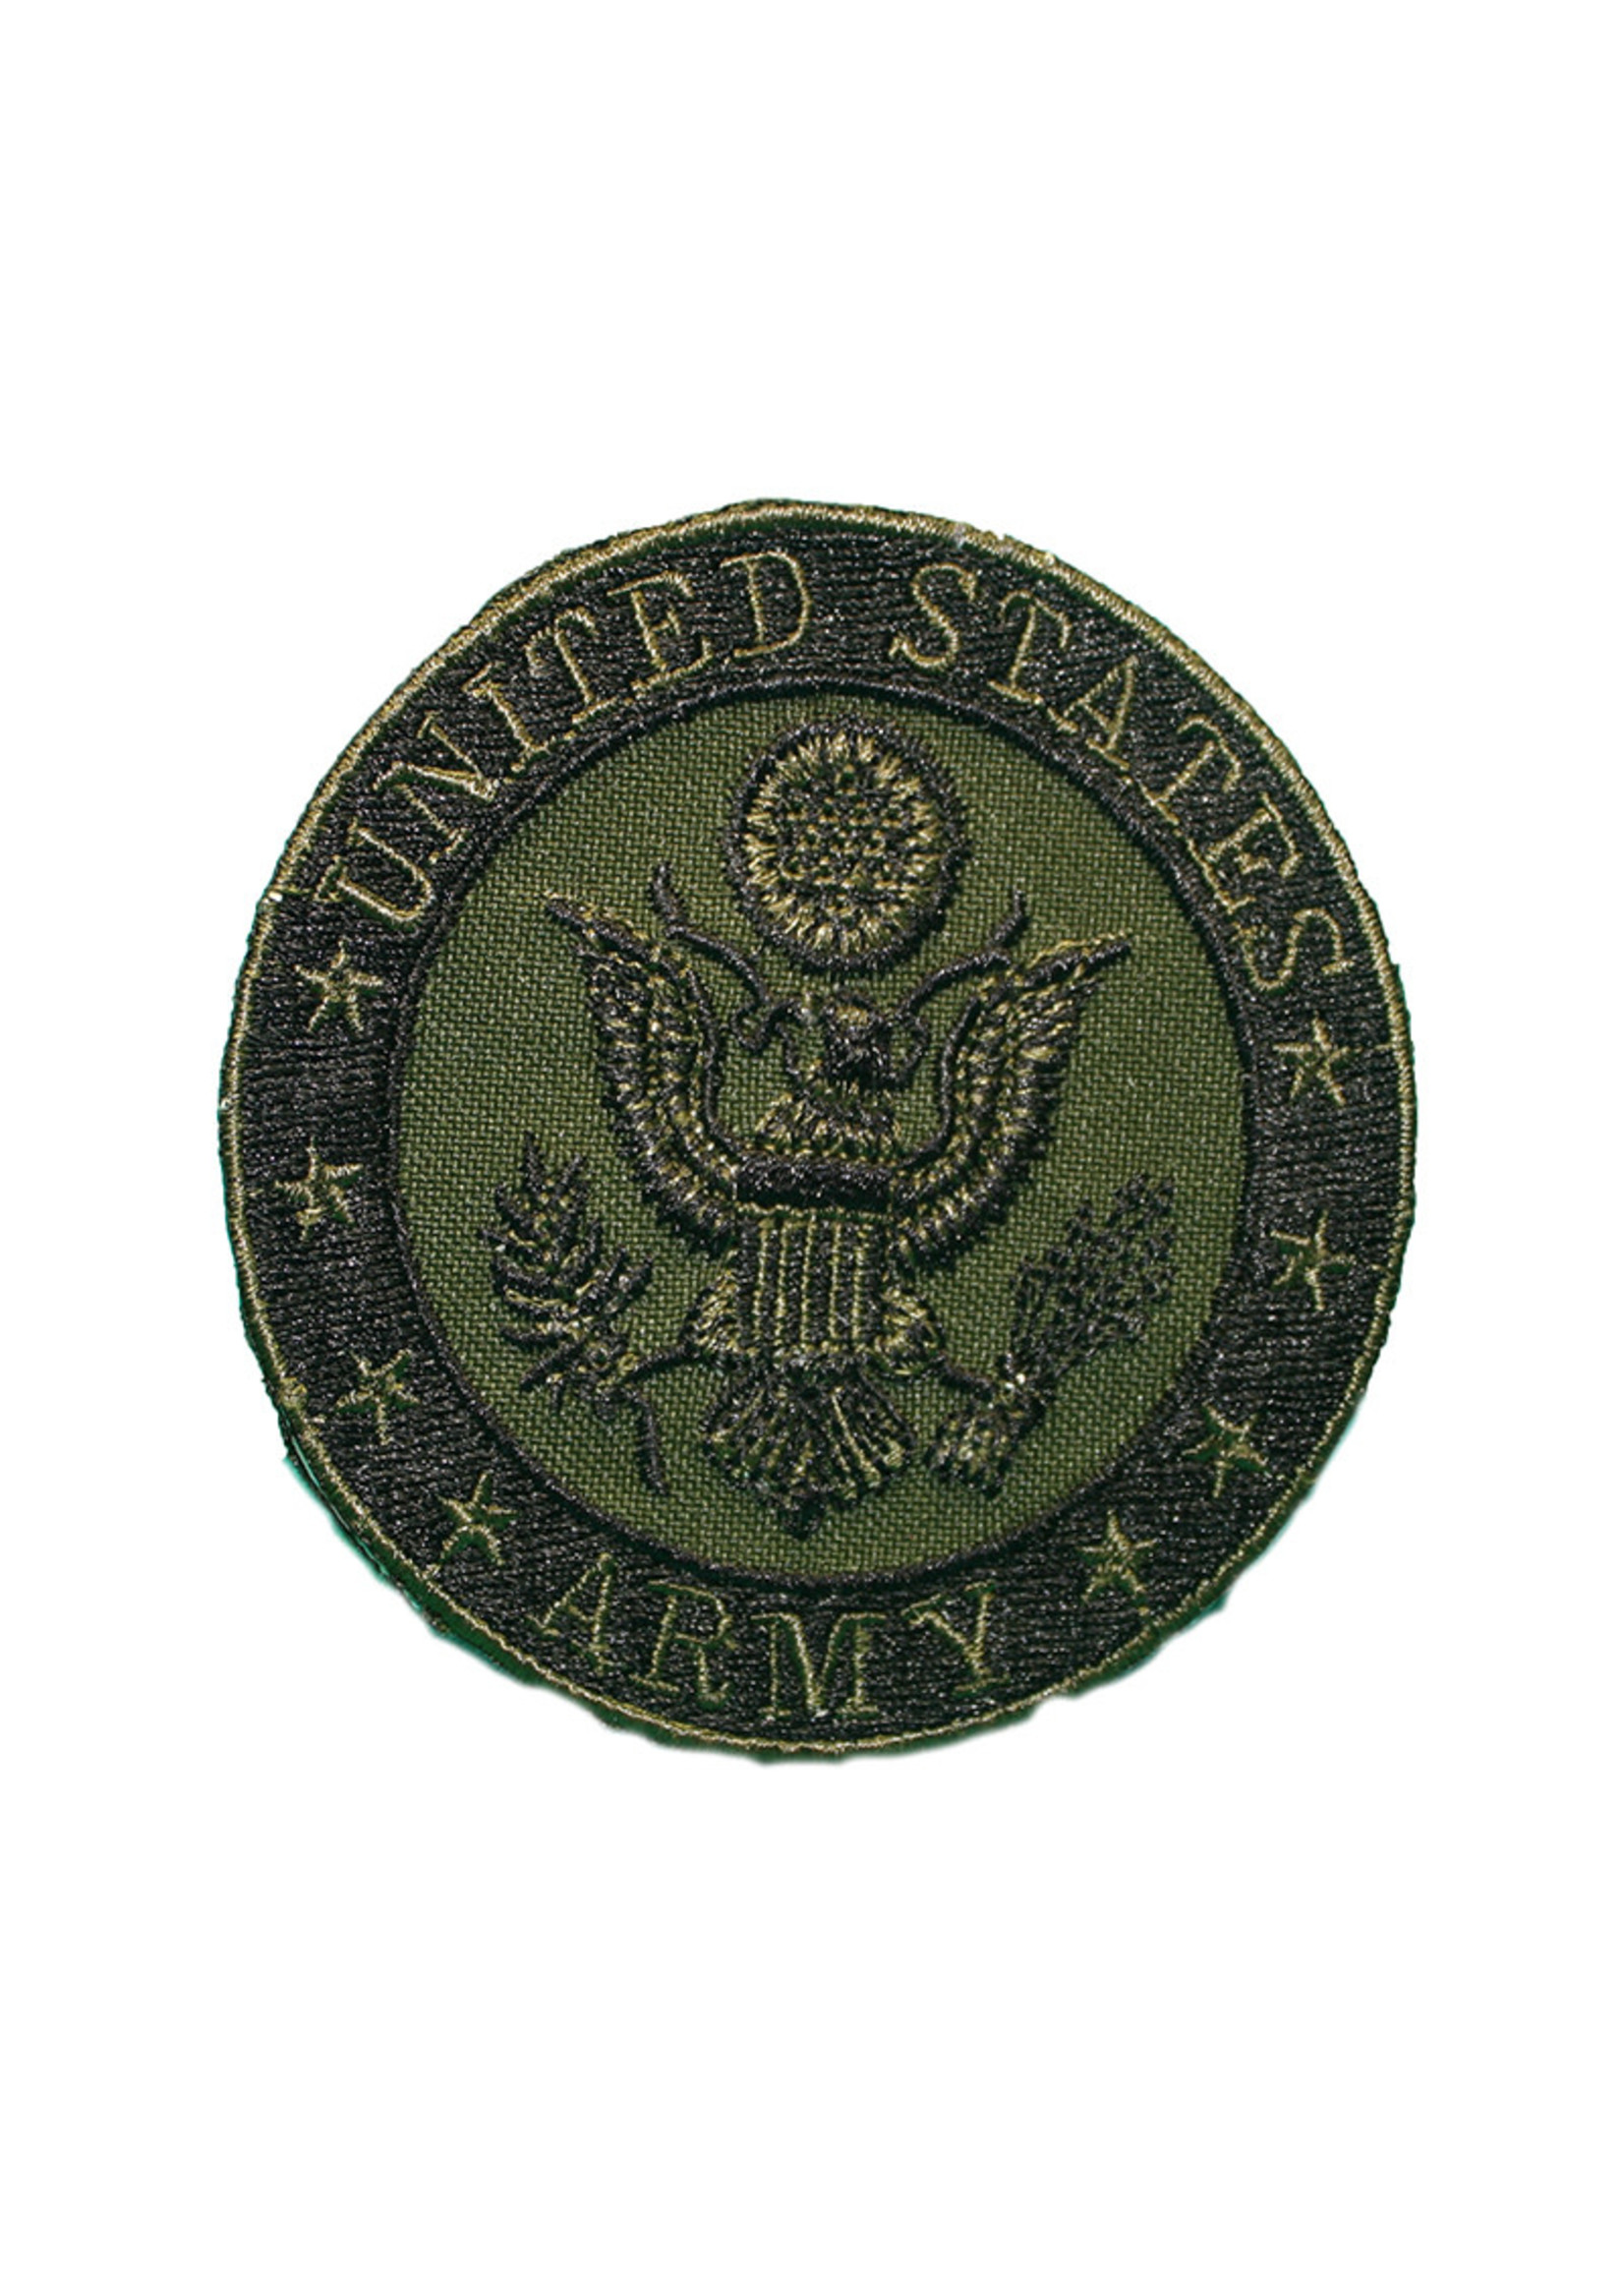 Eagle Emblems Patch Army Emblem Subdued